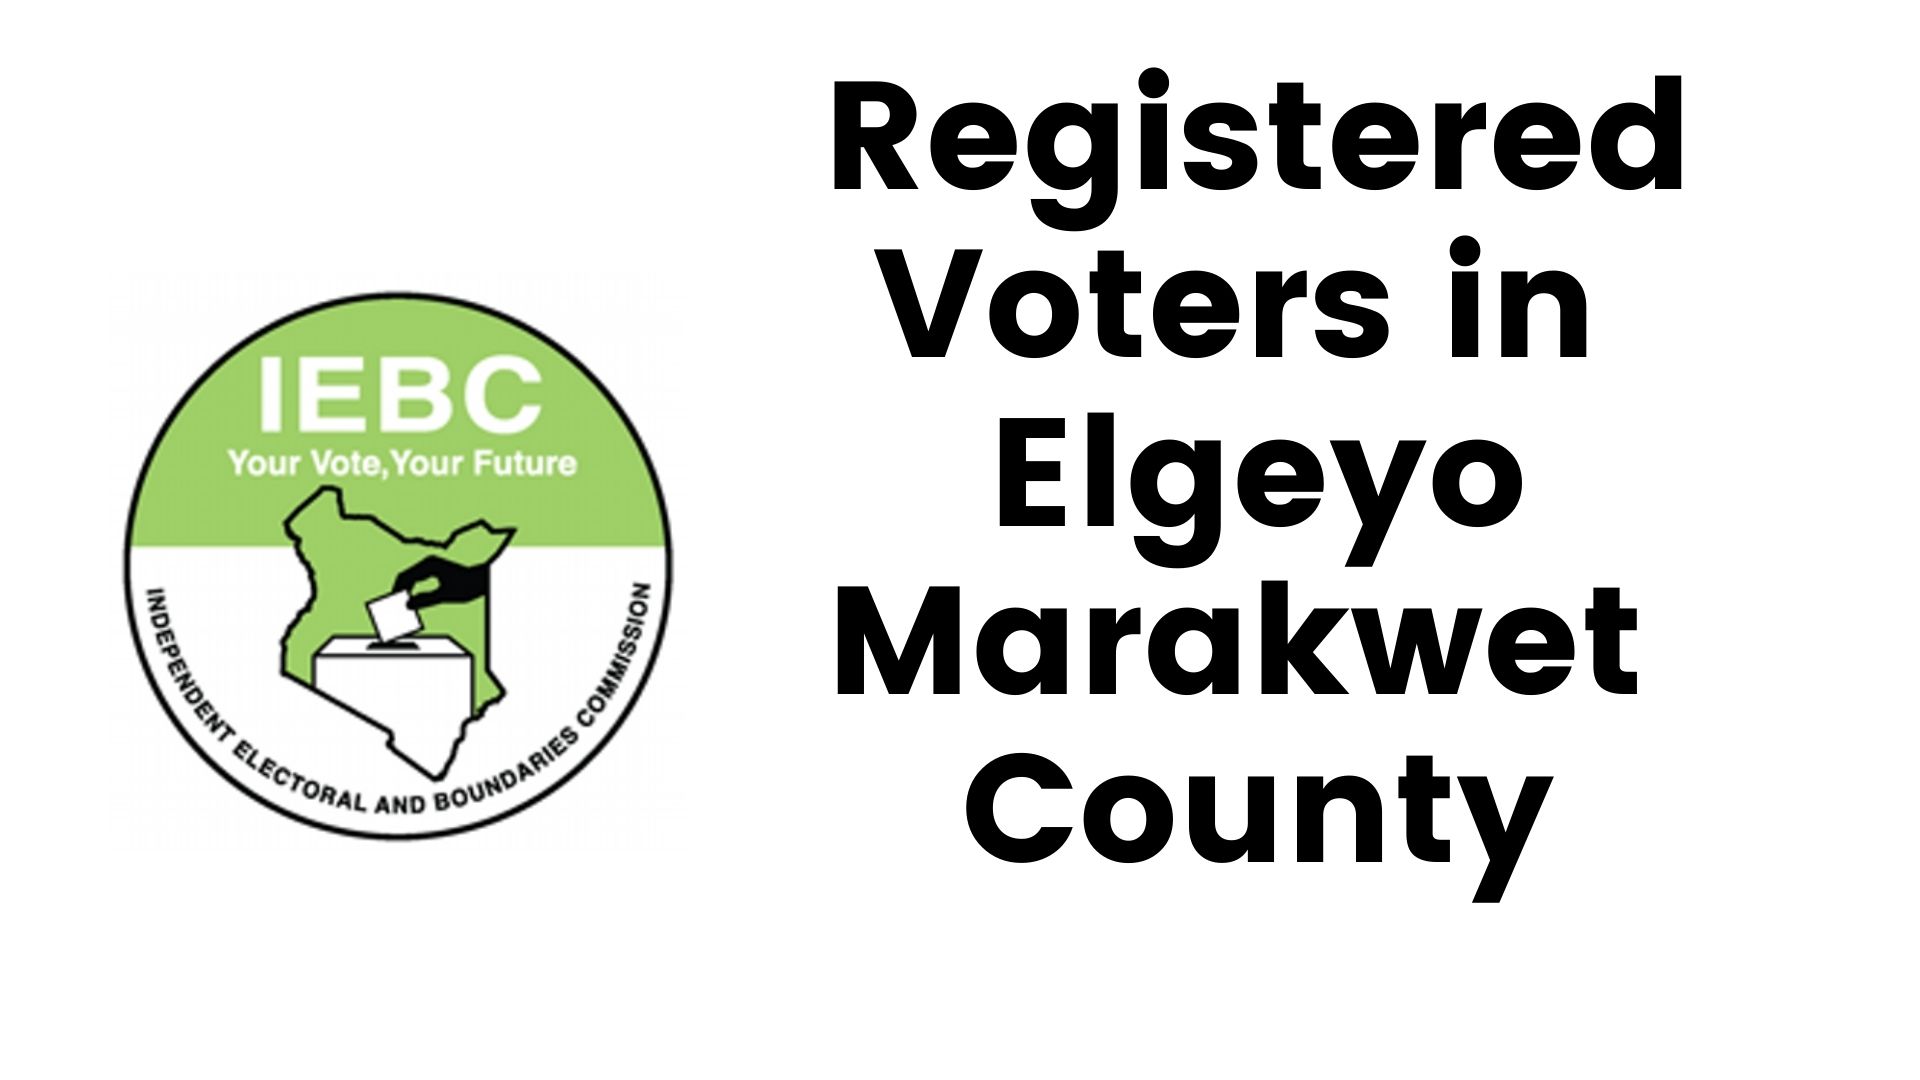 IEBC Elgeyo Marakwet County Registered Voters